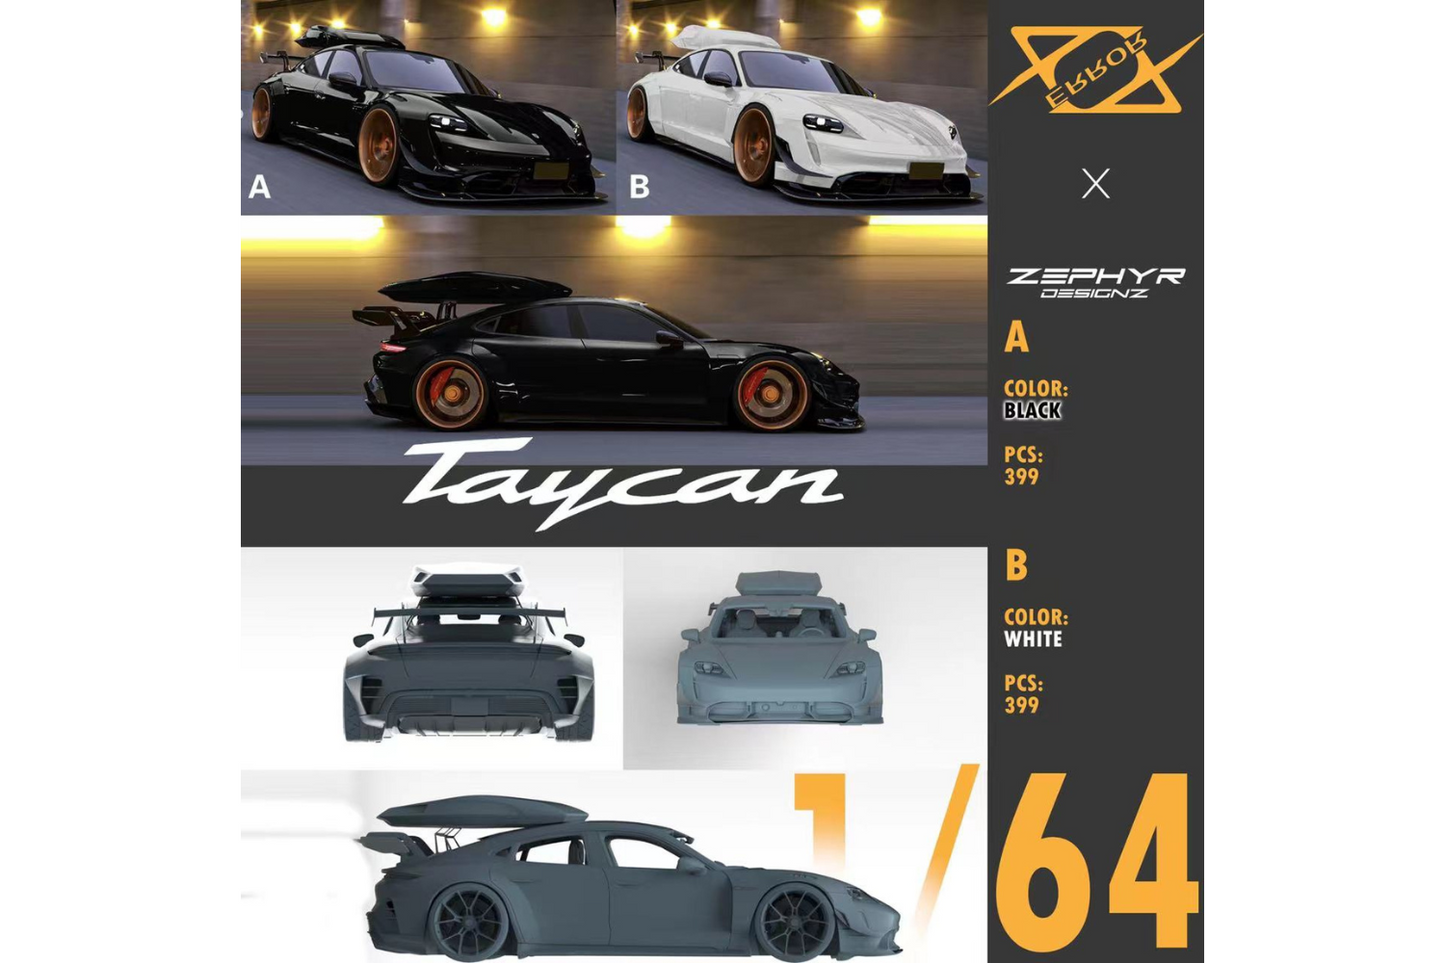 Error 404 x Zephyr Designz 1/64 Porsche Taycan Wide Body